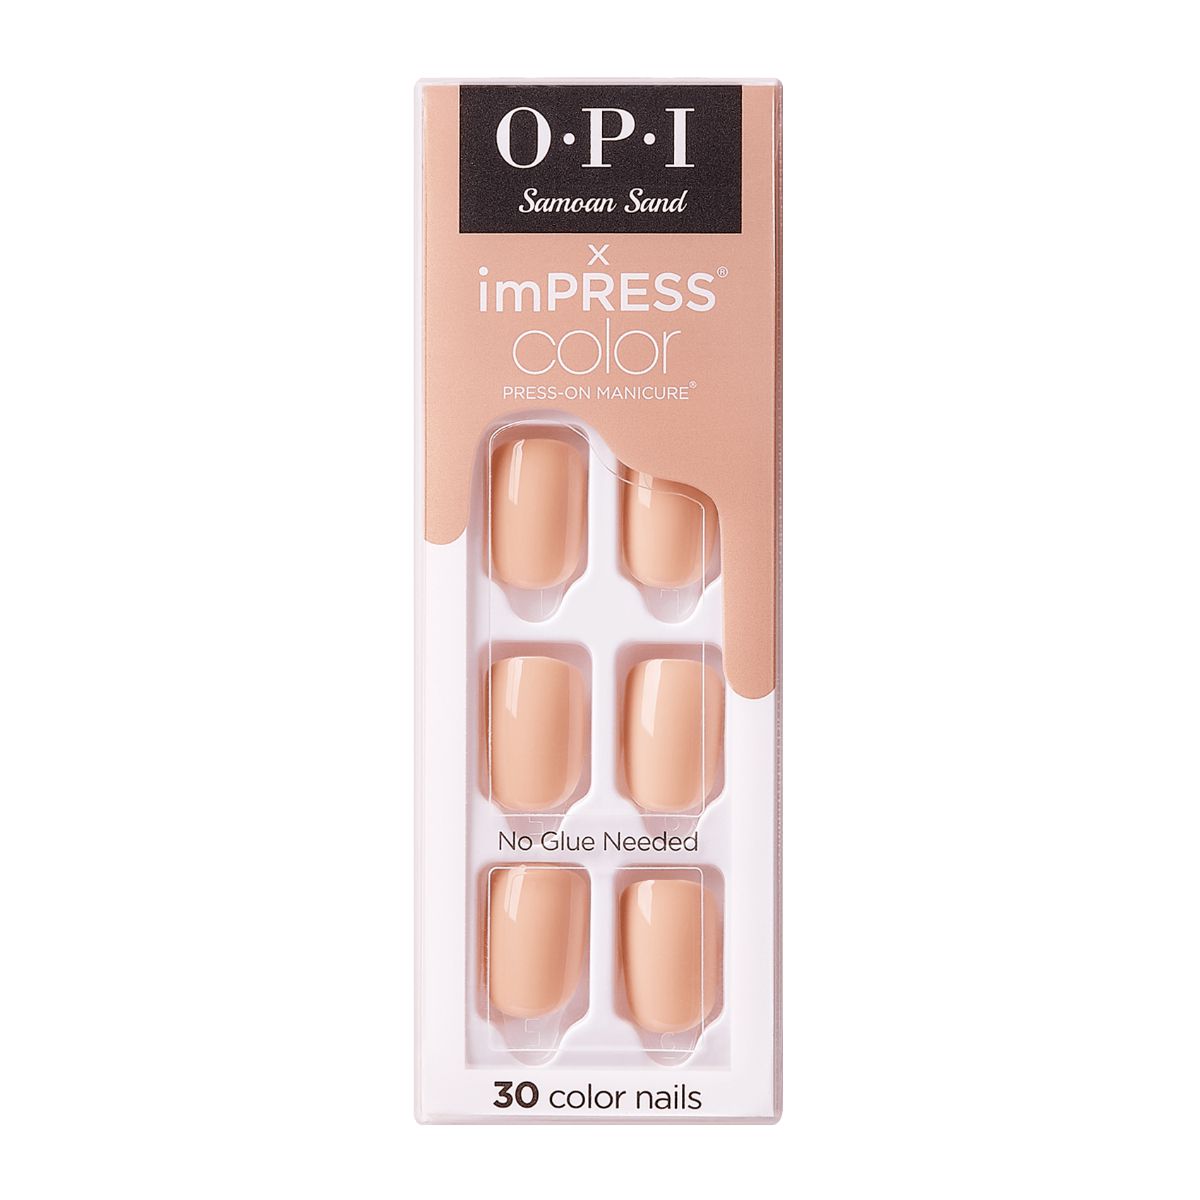 OPI Press On Nails